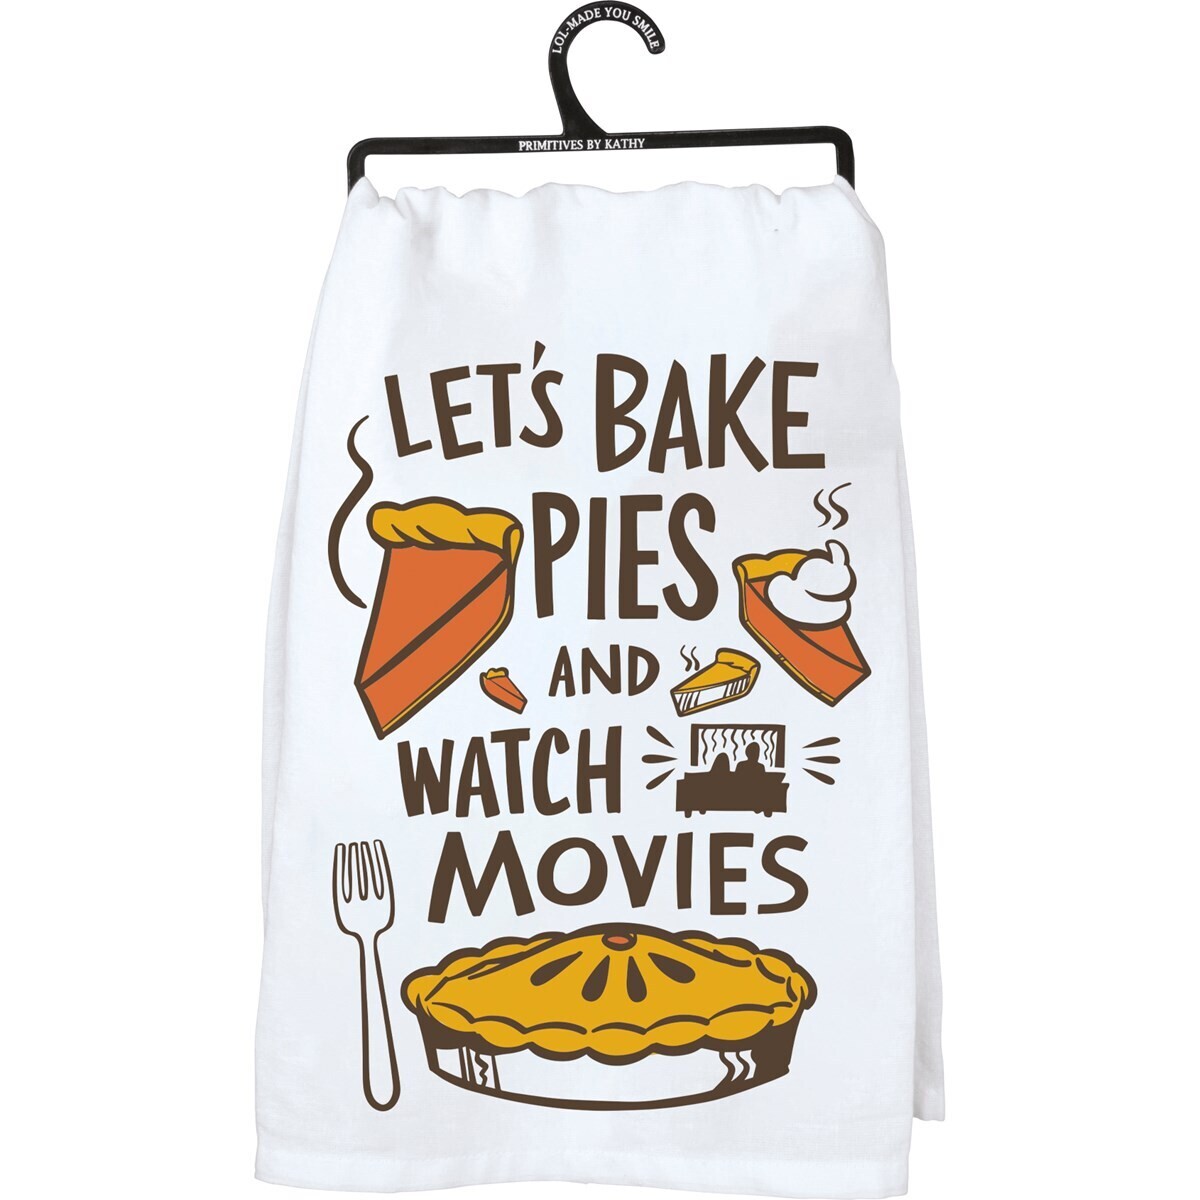 Bake & Movies Dish Towel